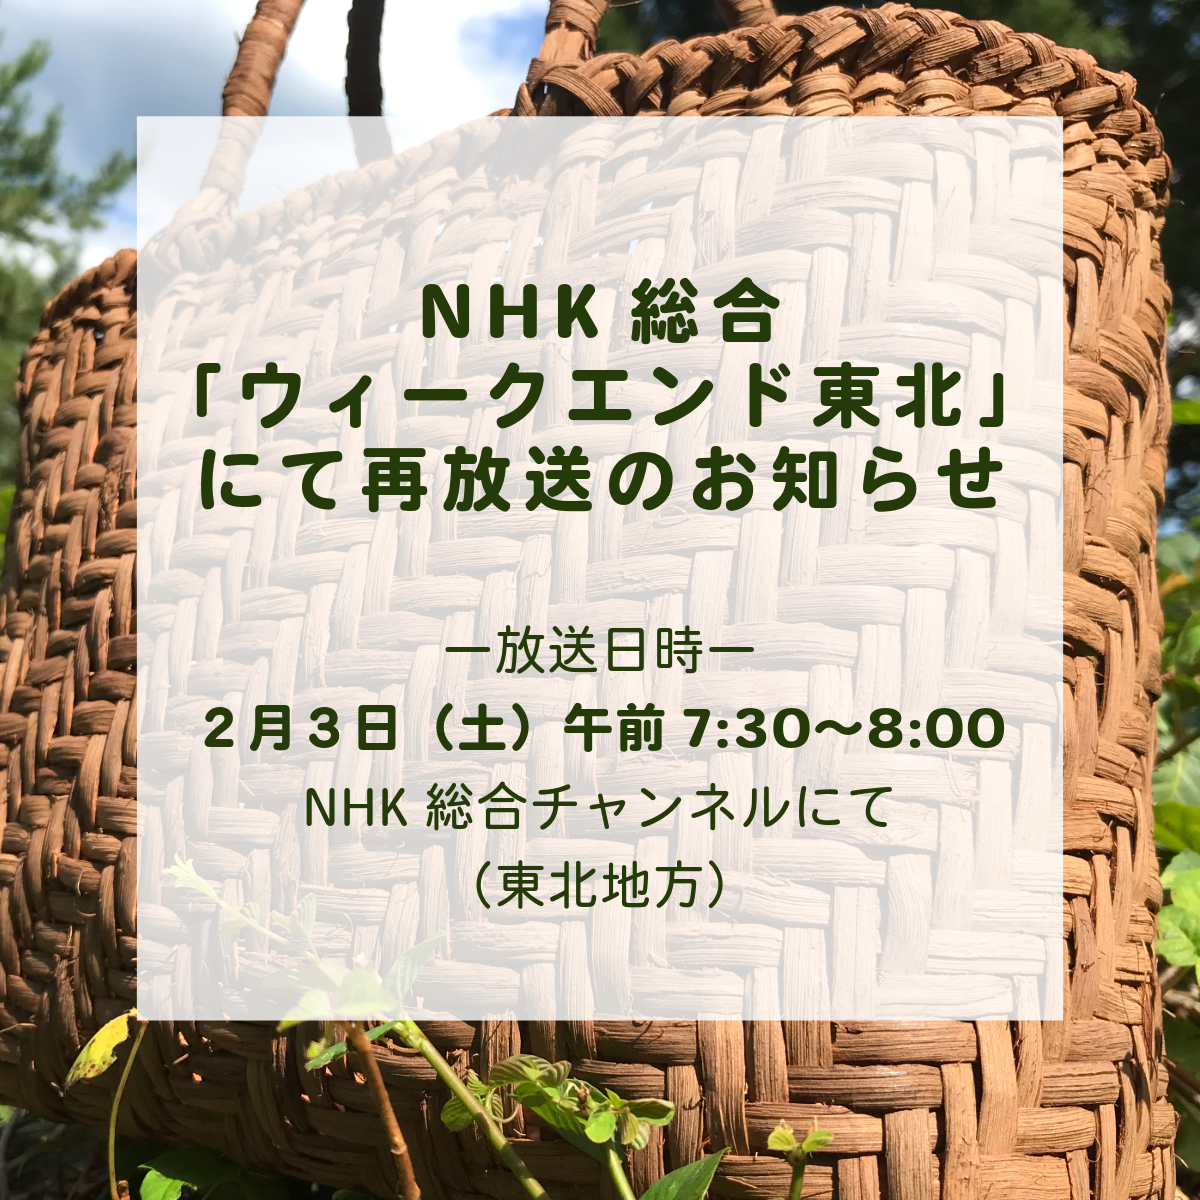 2/3(土)NHK総合「ウィークエンド東北」にて再放送のお知らせ